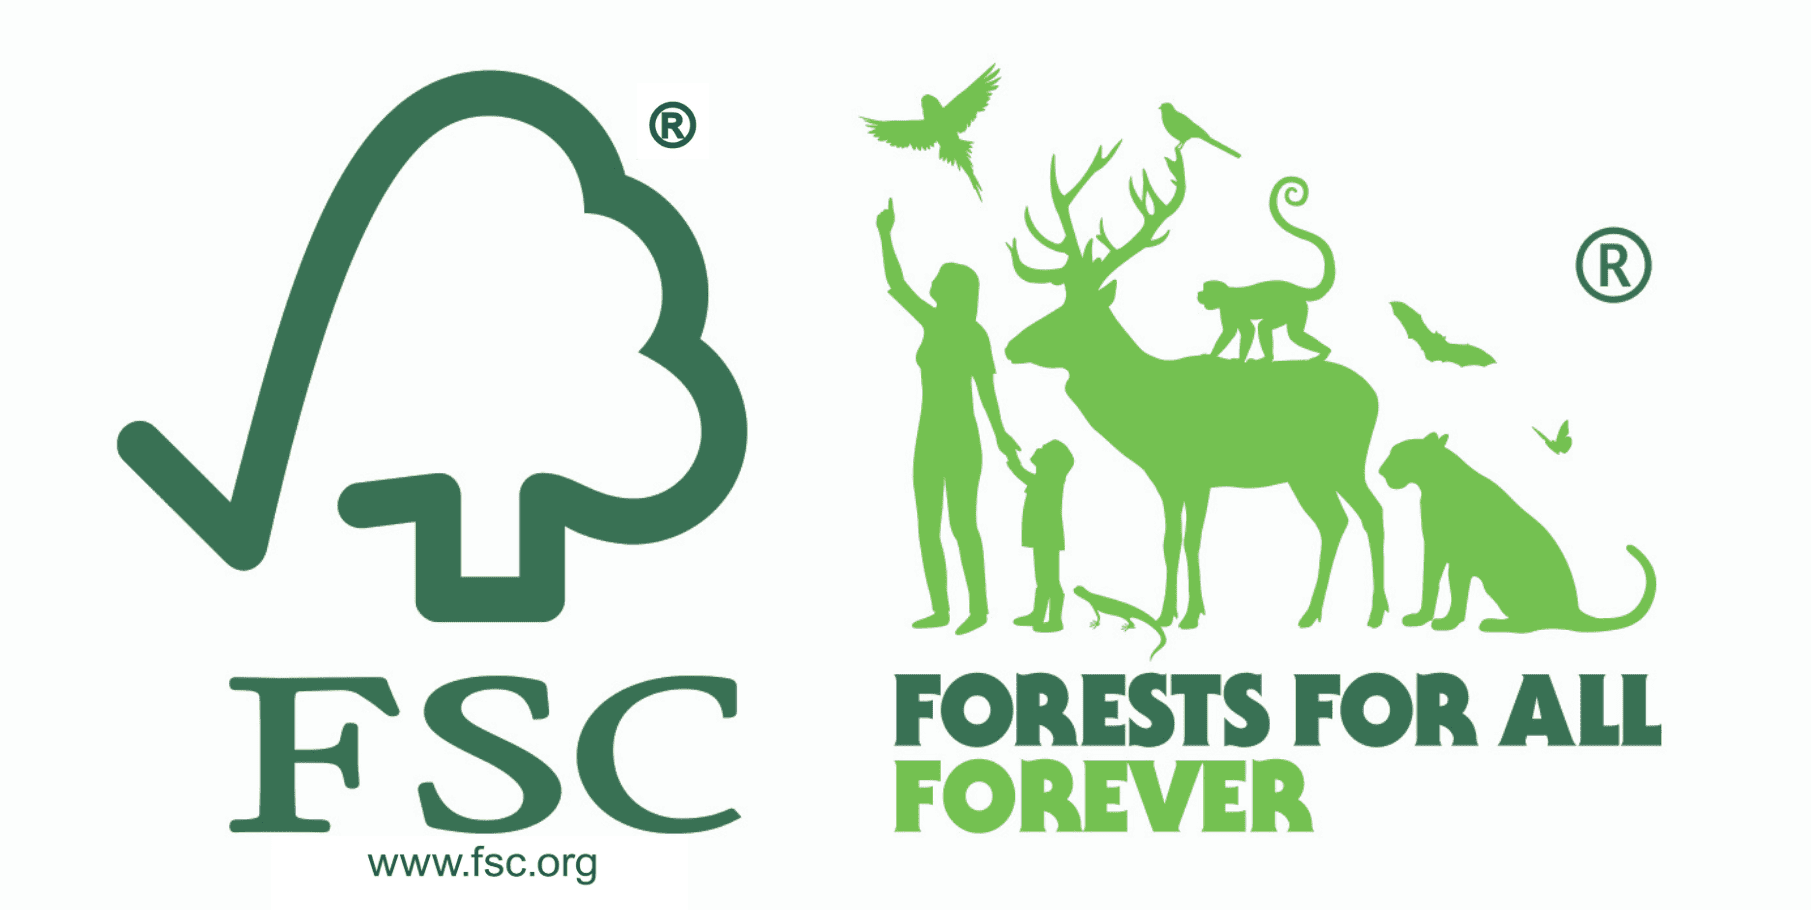 Bao bì giấy đạt tiêu chuẩn FSC thân thiện với môi trường